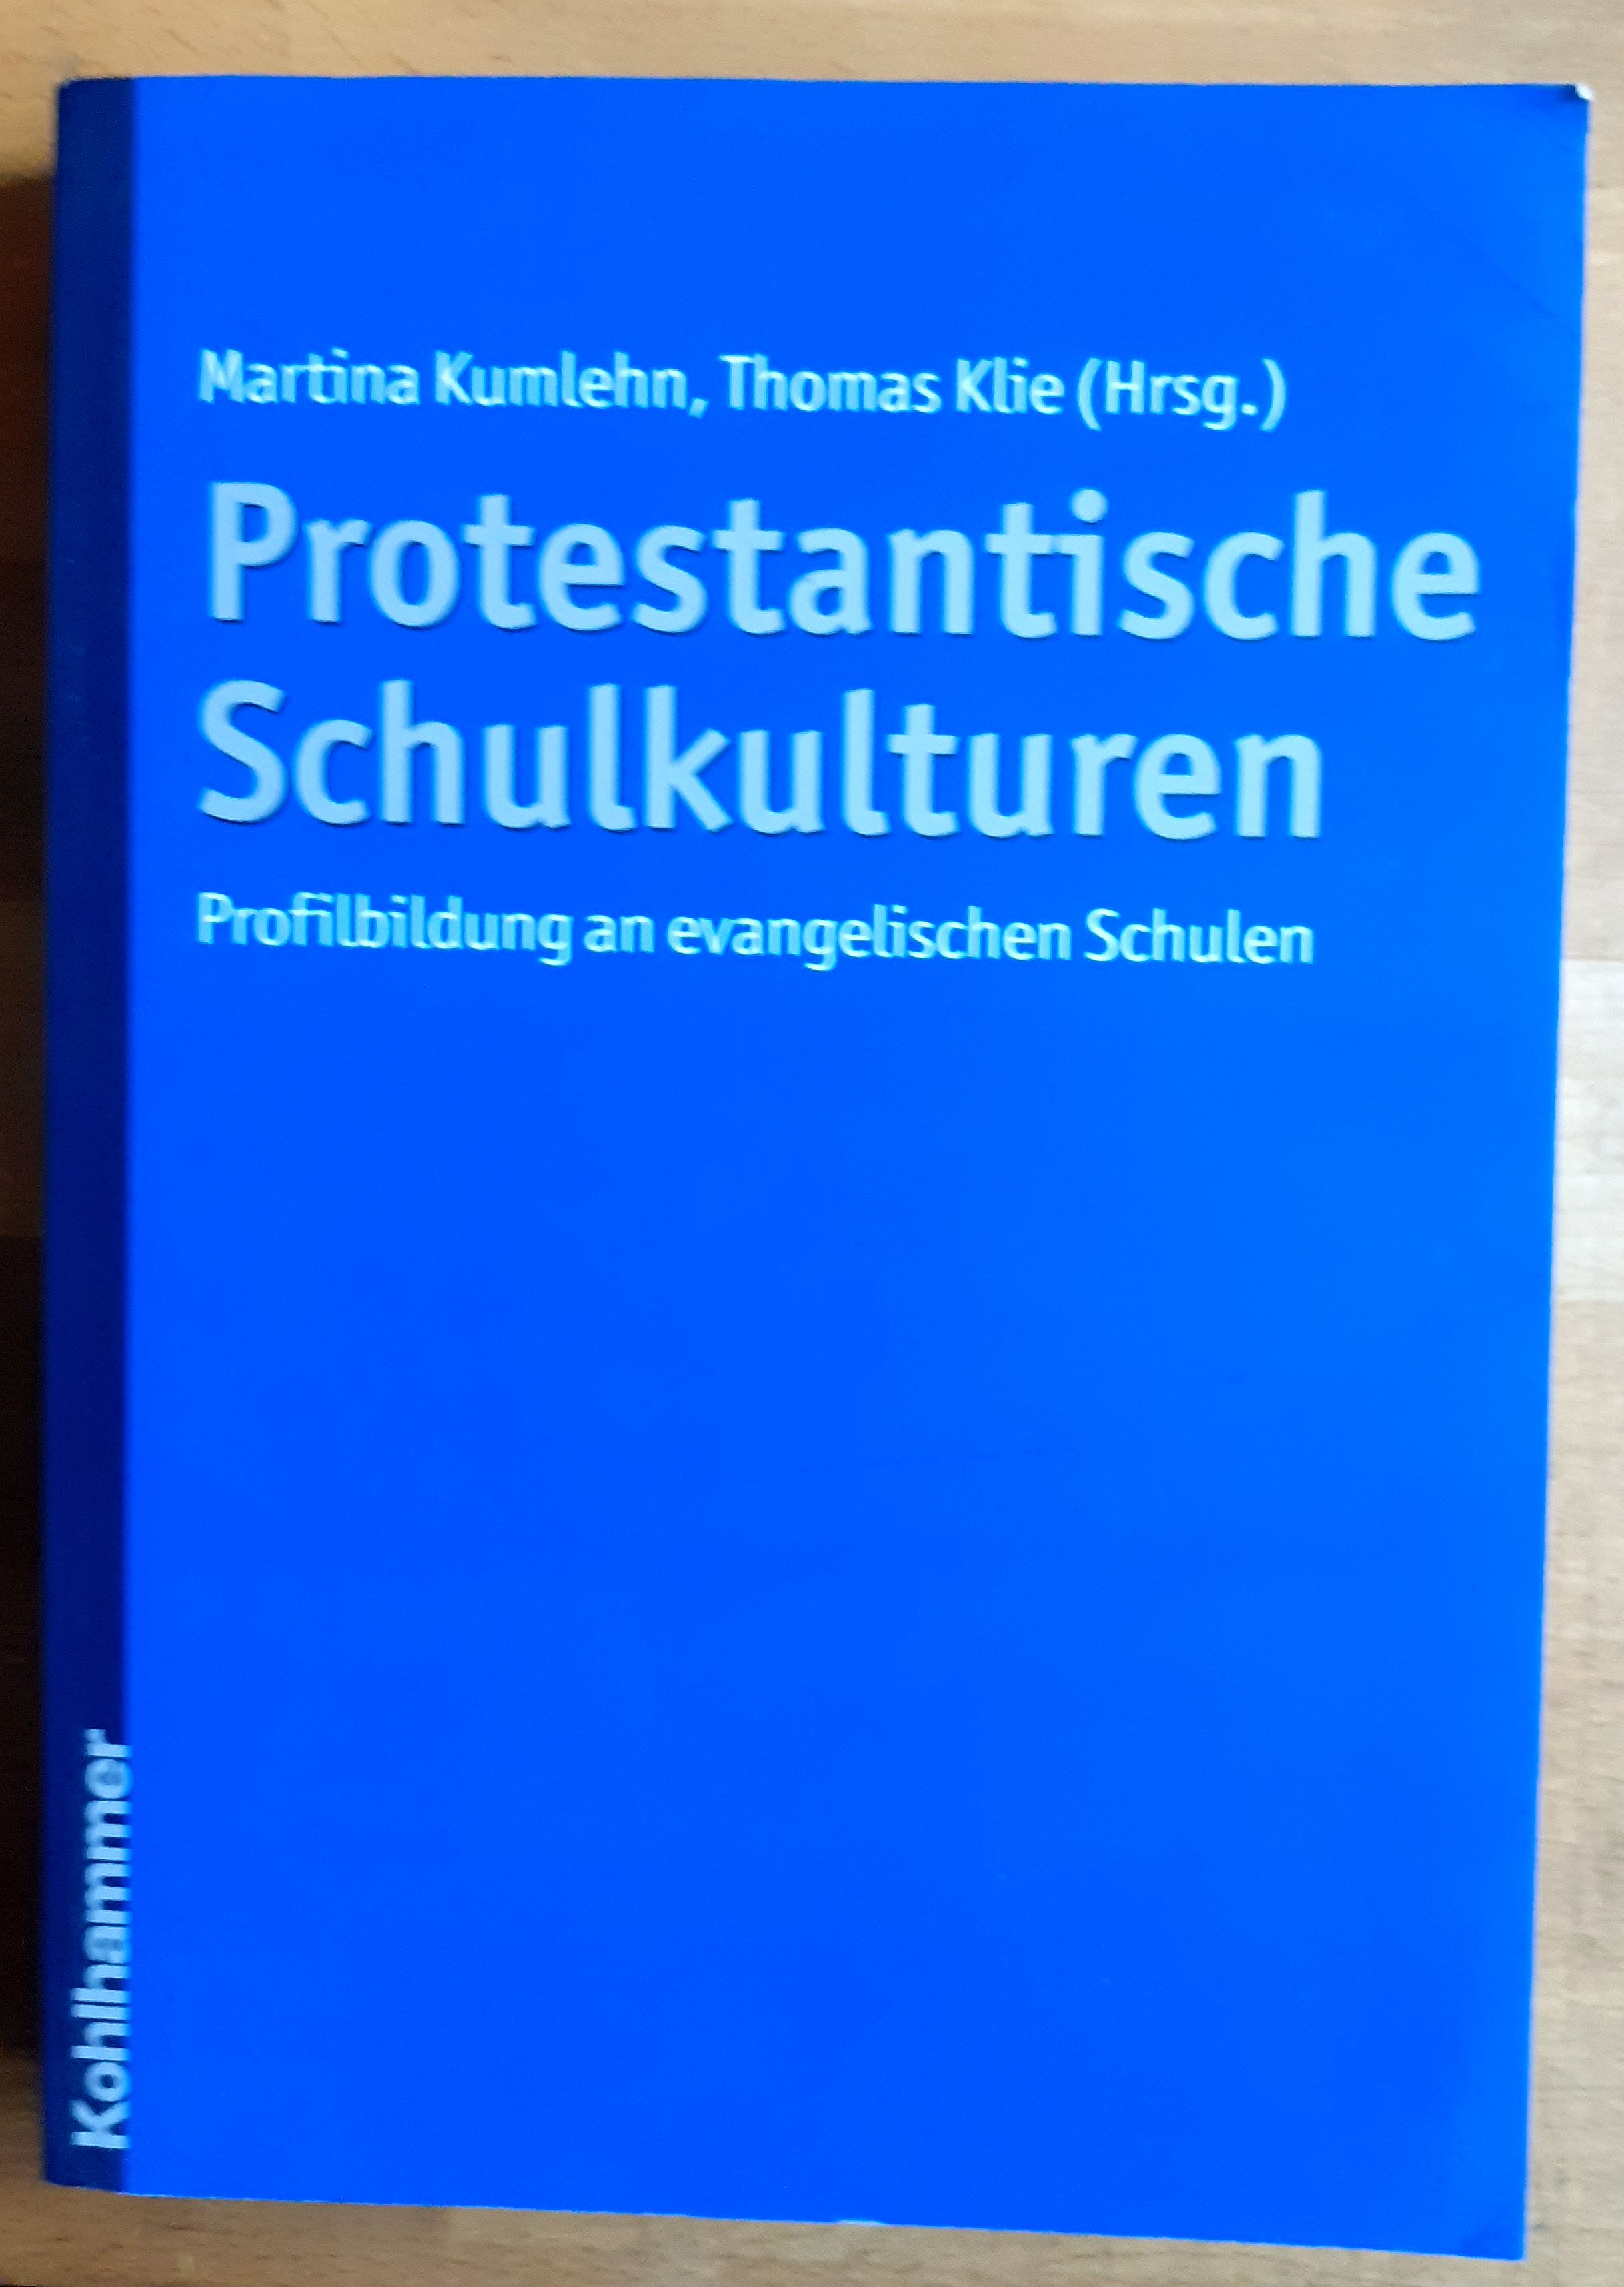 Protestantische Schulkulturen : Profilbildung an evangelischen Schulen - Kumlehn, Martina ; Klie, Thomas (Herausgeber)